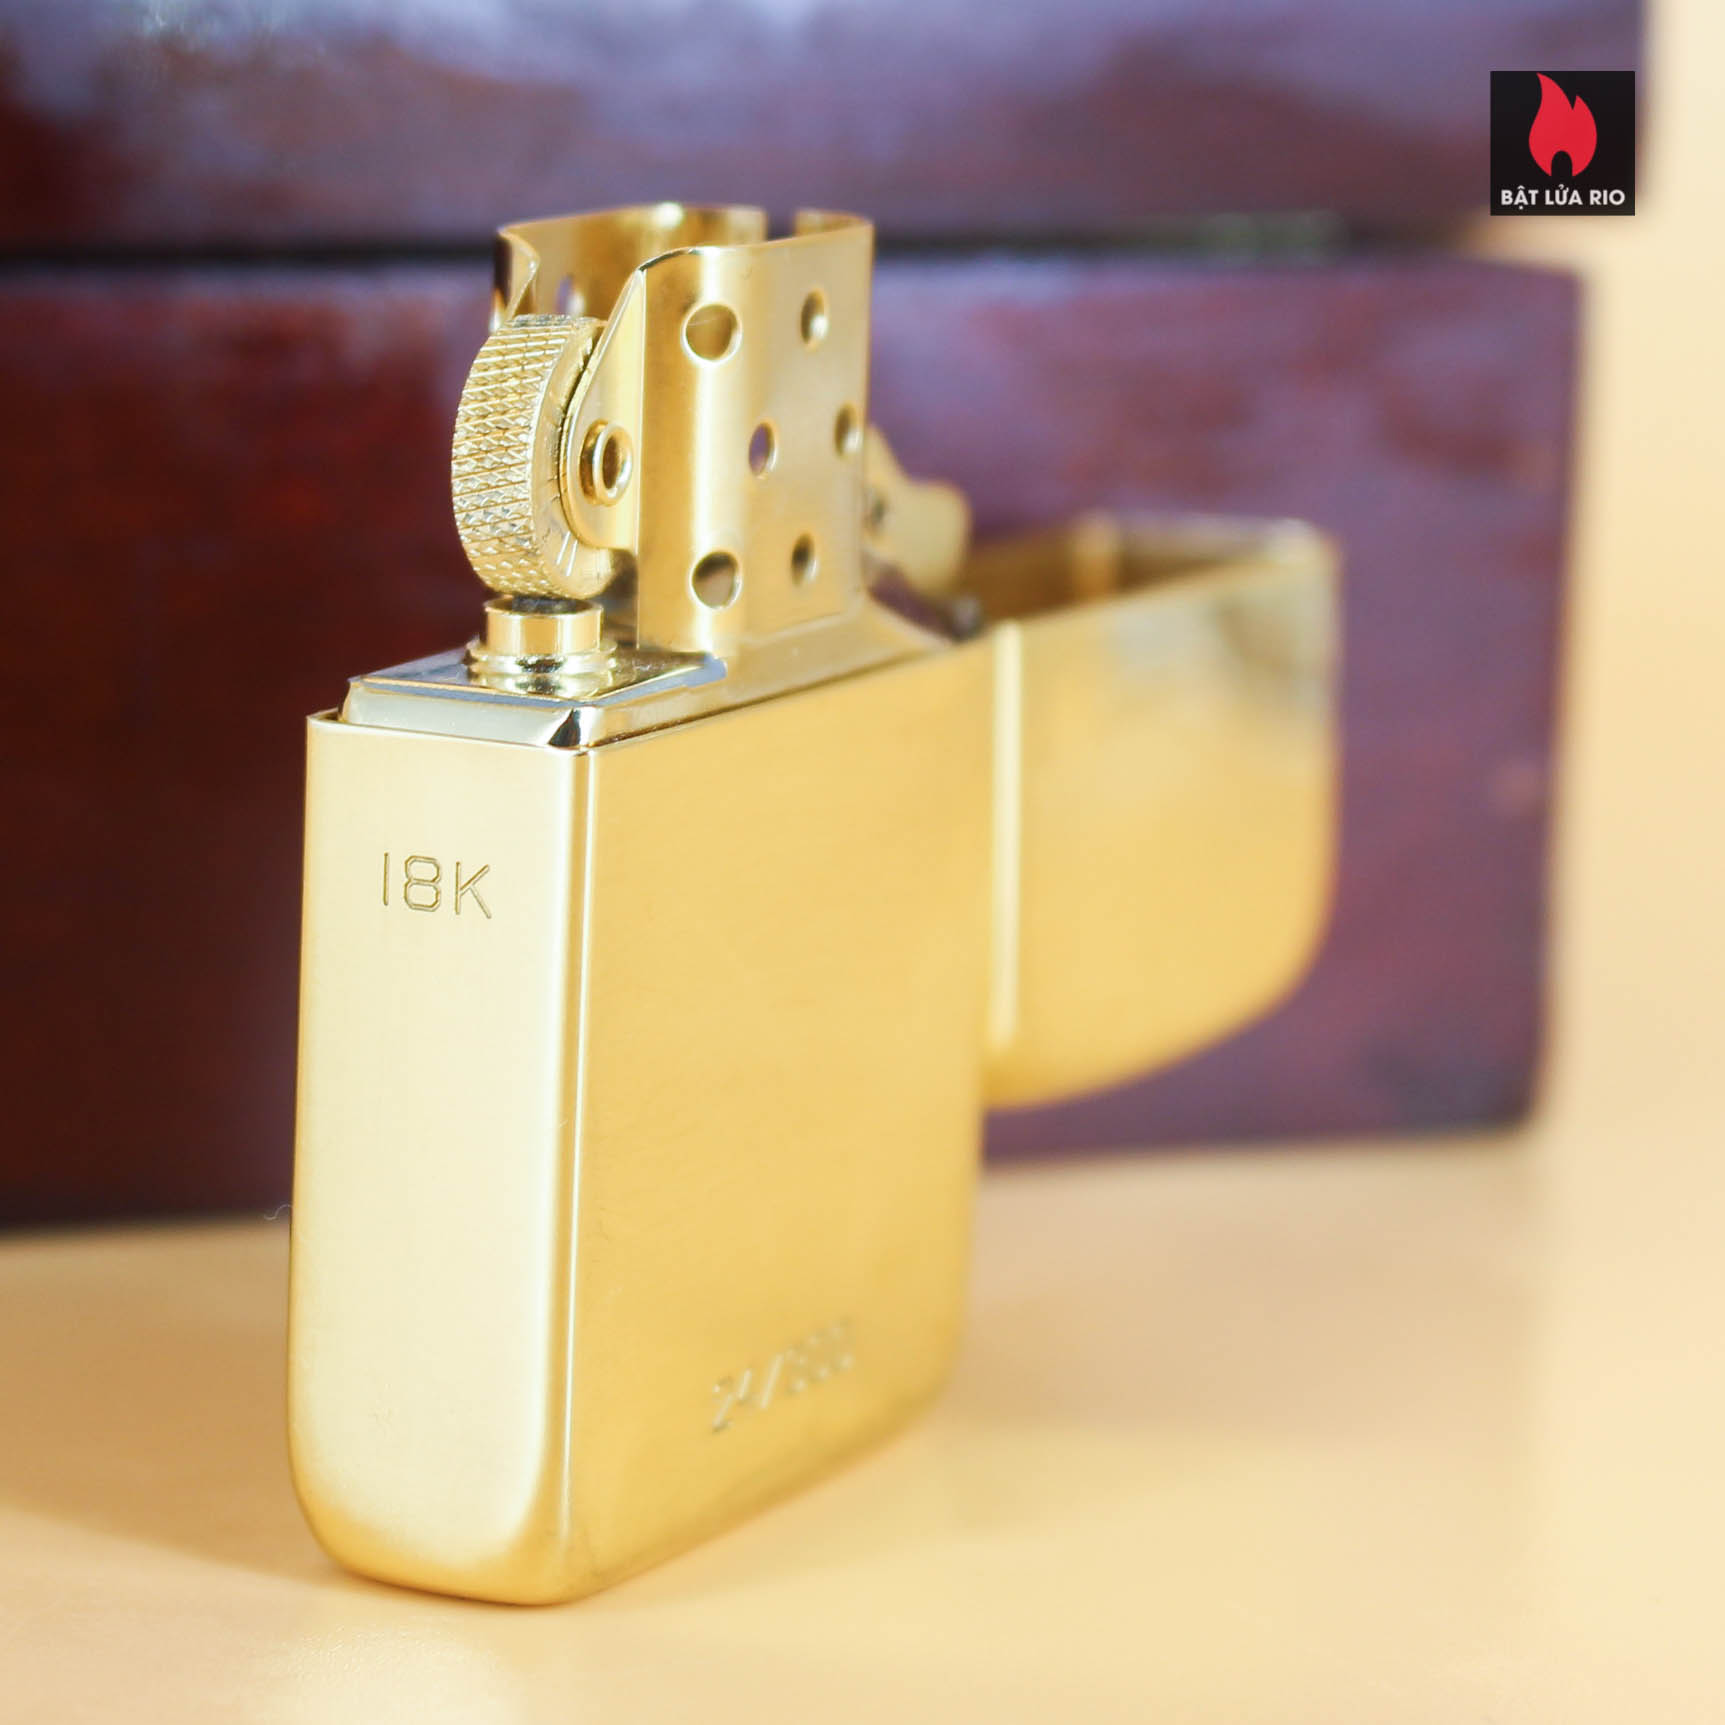 HIẾM - SIÊU PHẨM Zippo vàng nguyên khối Solid Gold 18K – Zippo Signet Lighter 18K Solid Gold - GGB 1941 - Giới hạn 300 chiếc trên toàn thế giới - Limited 24/300 4